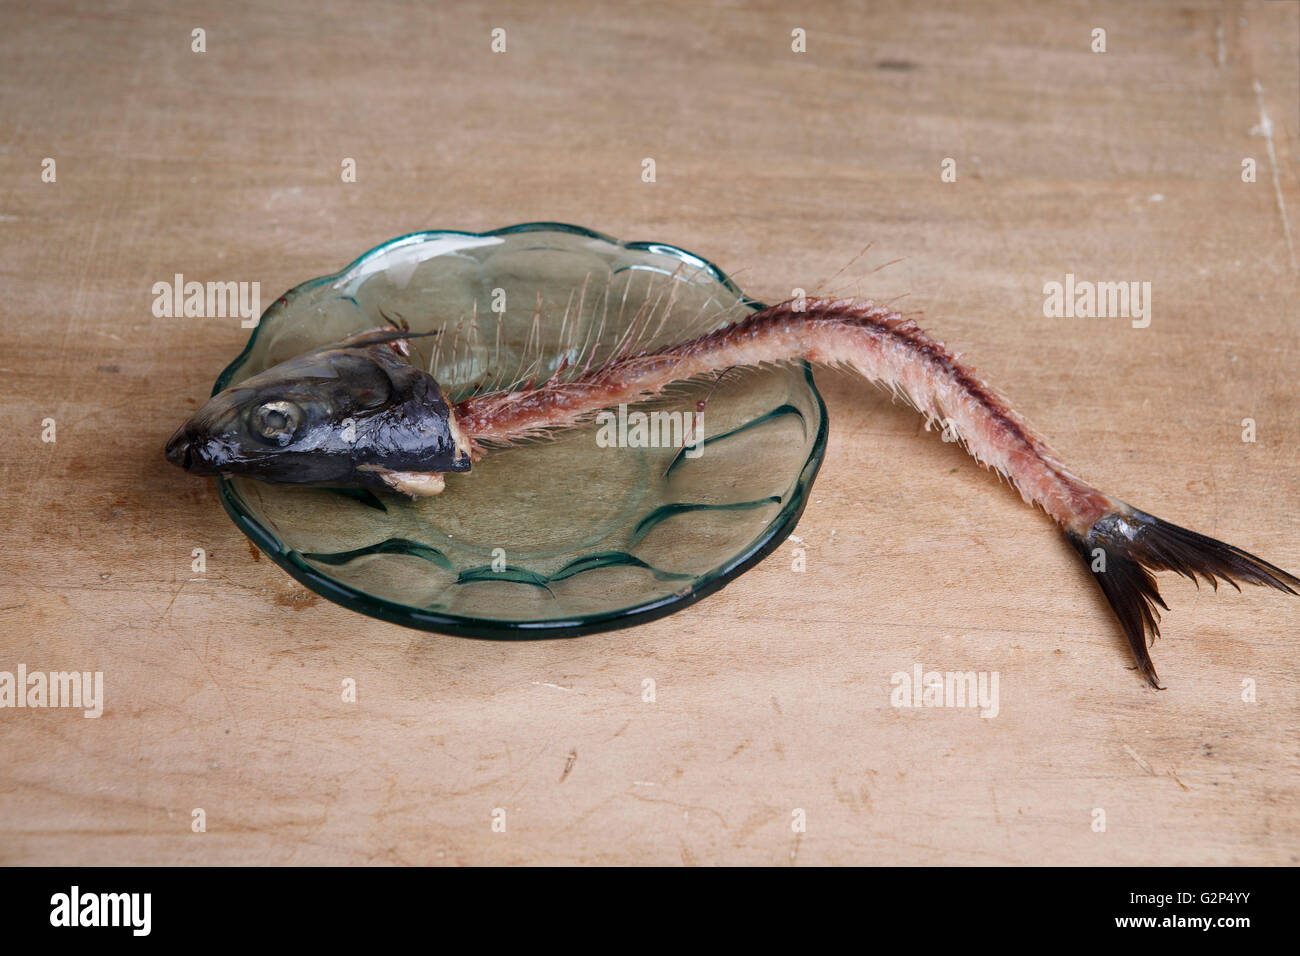 Skeleton of an eaten Herring on glass plate Stock Photo